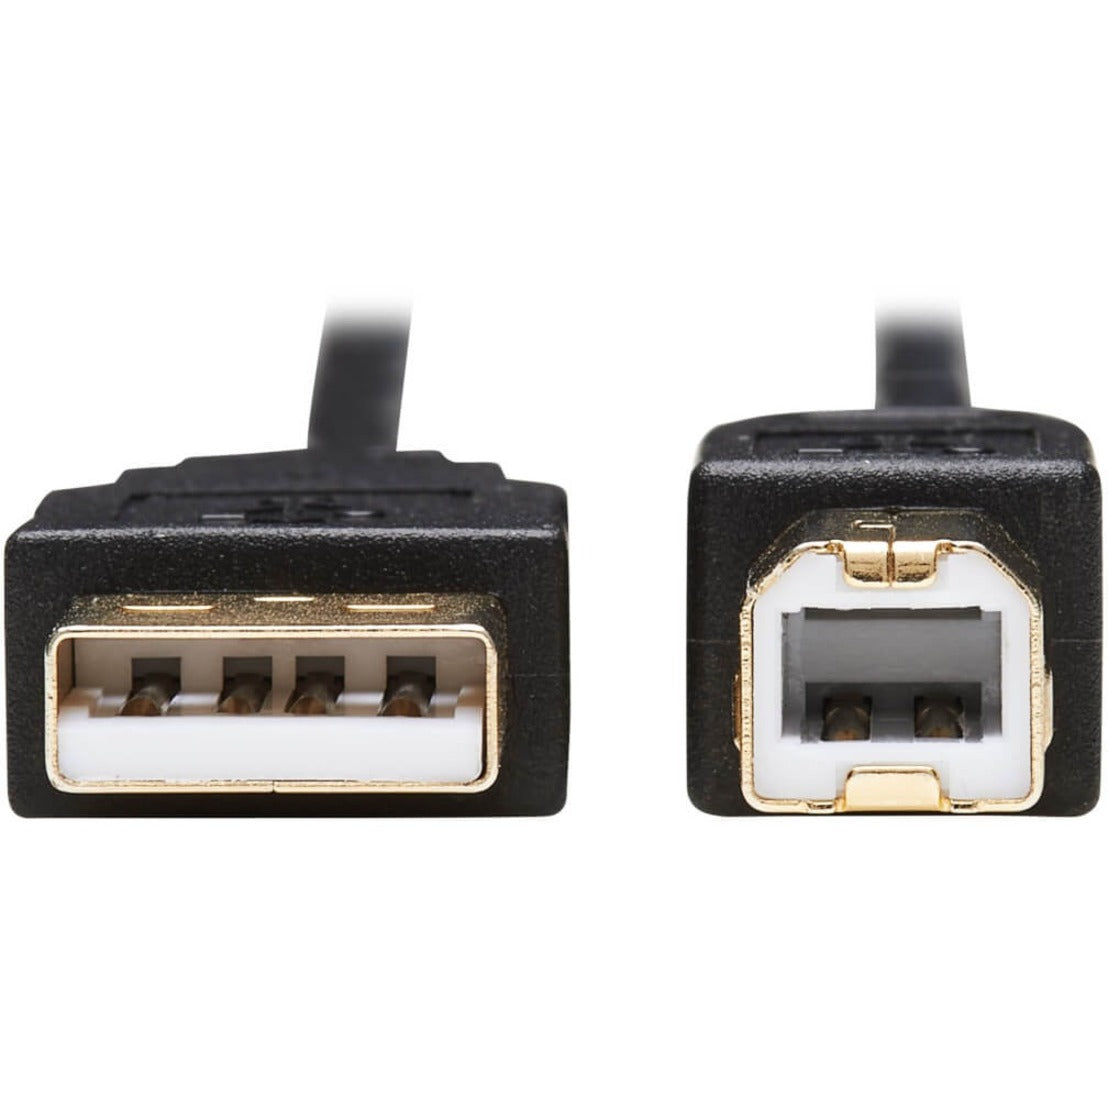 Tripp Lite P782-006-HA HDMI KVM Cable Kit - 4K HDMI, USB 2.0, 3.5 mm Audio, 6 ft., Black